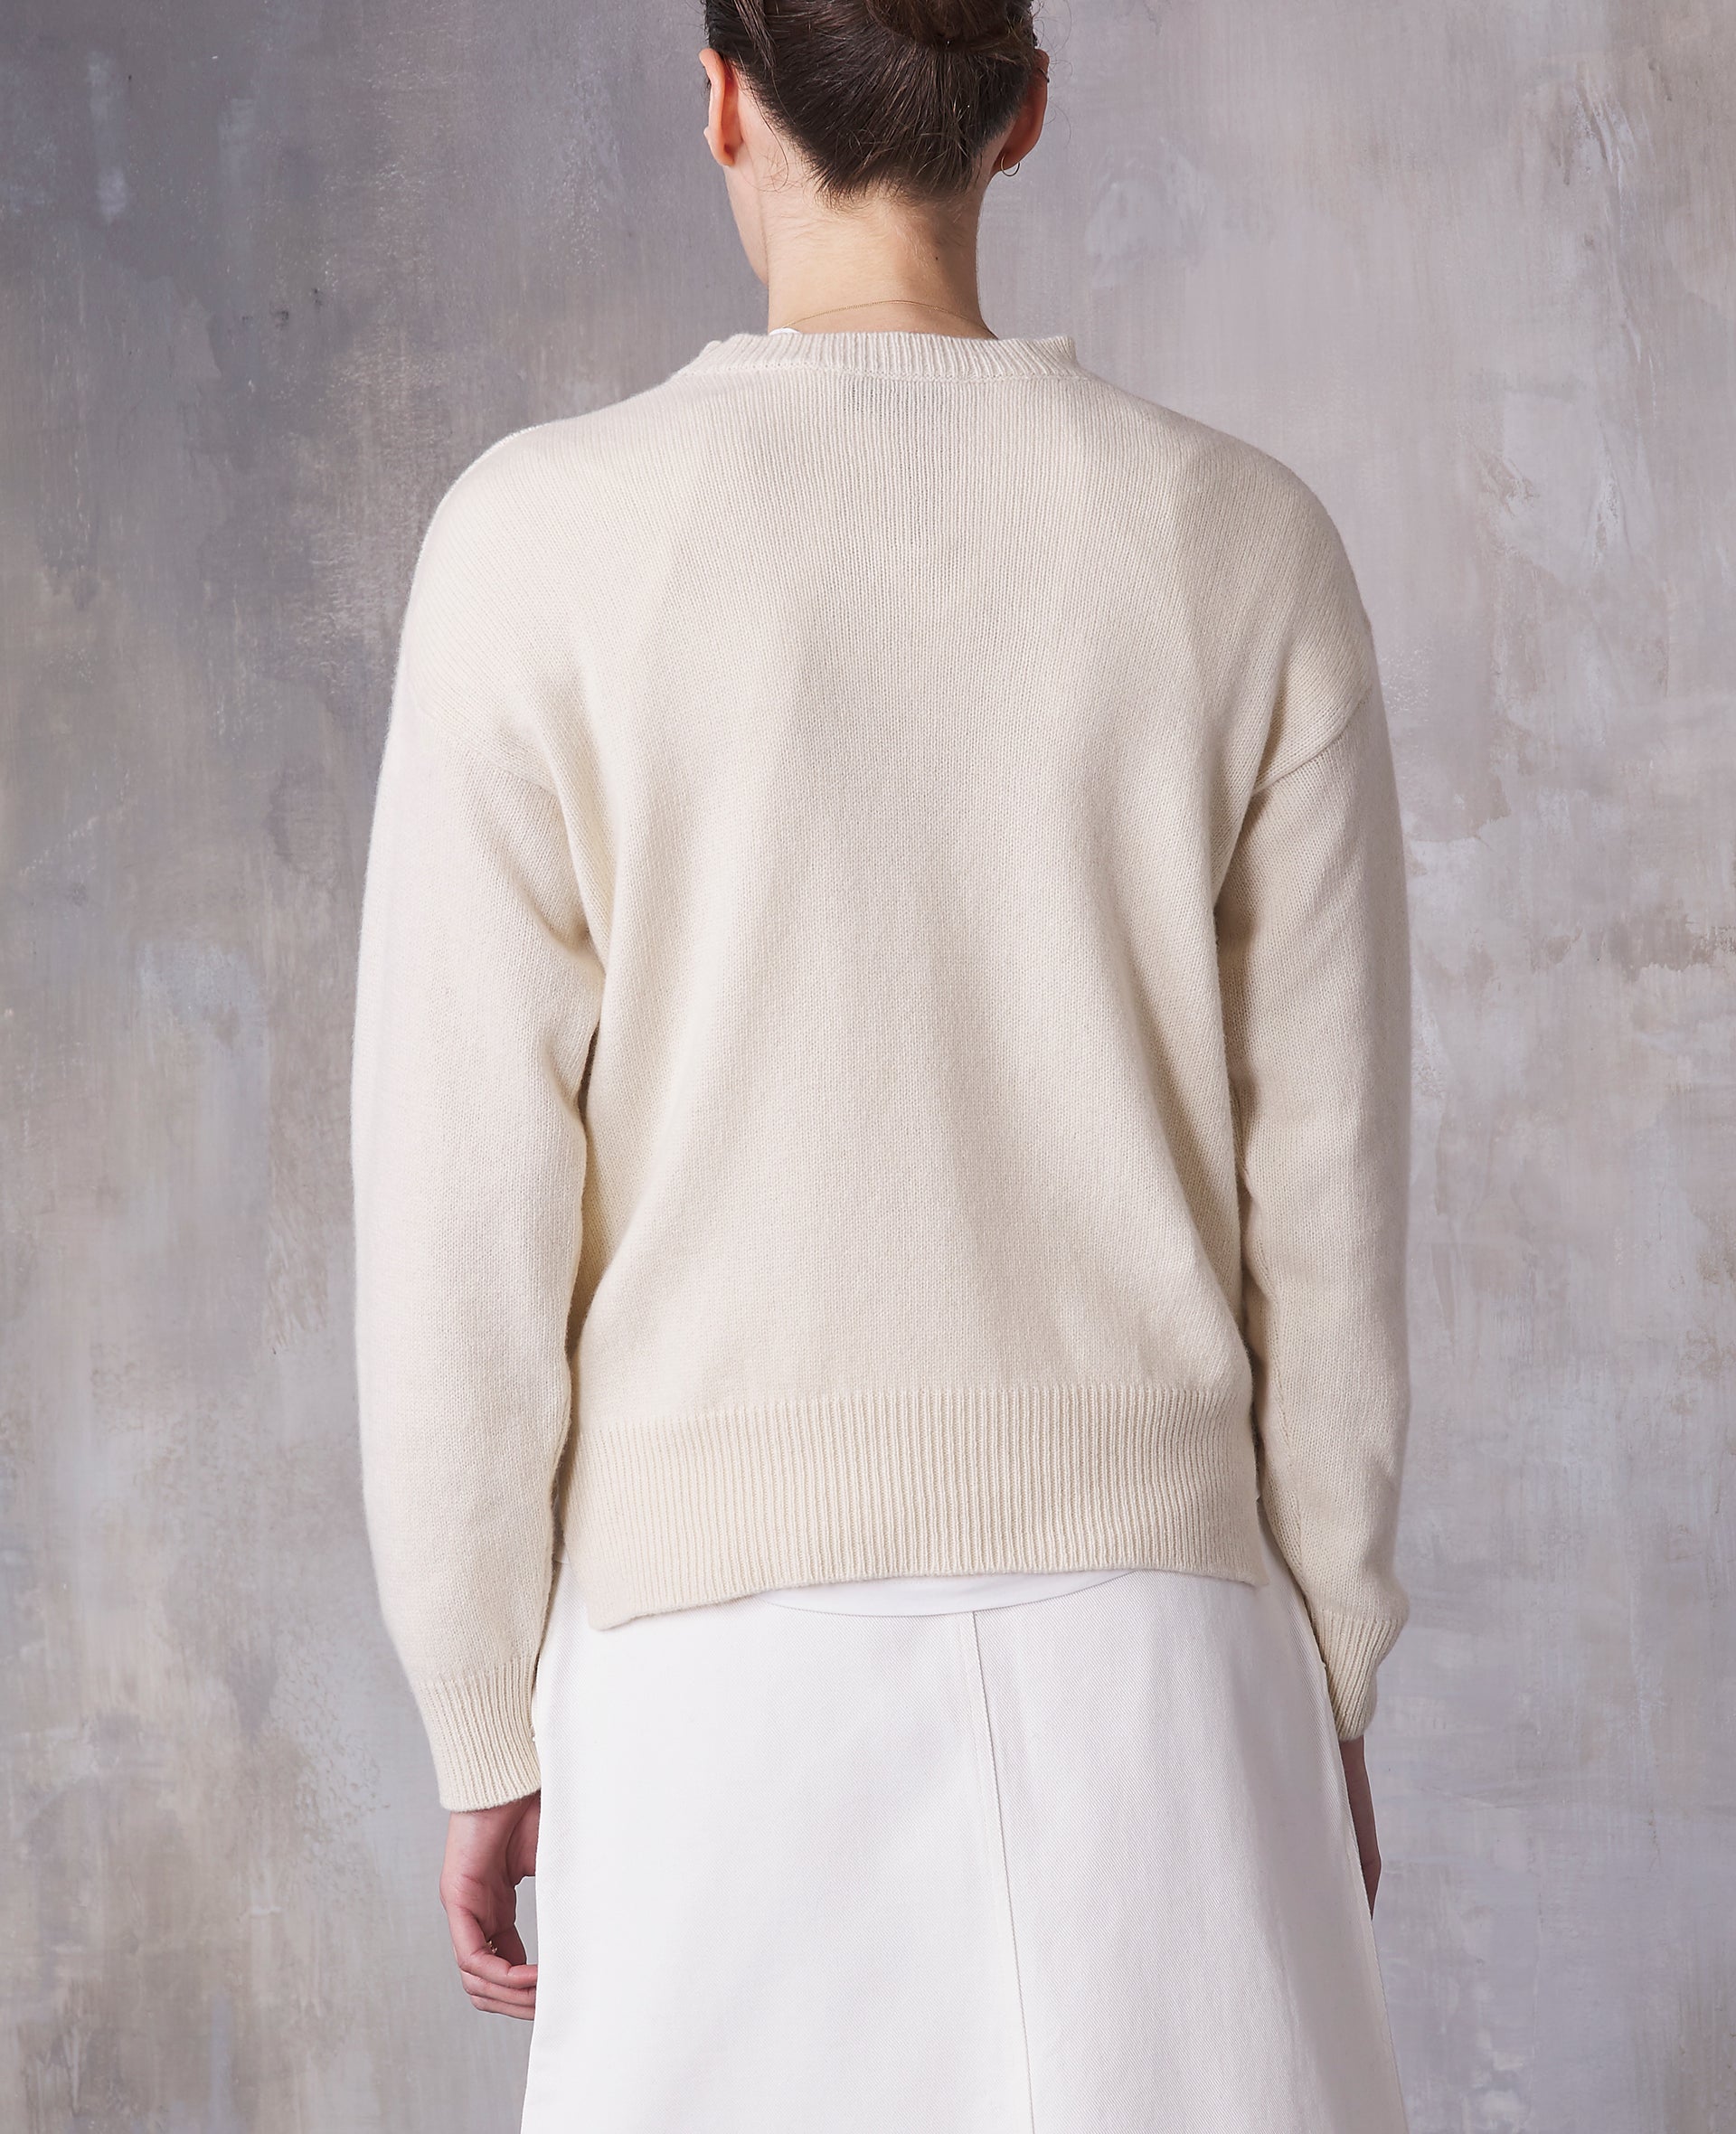 Palma sweater - Image 4